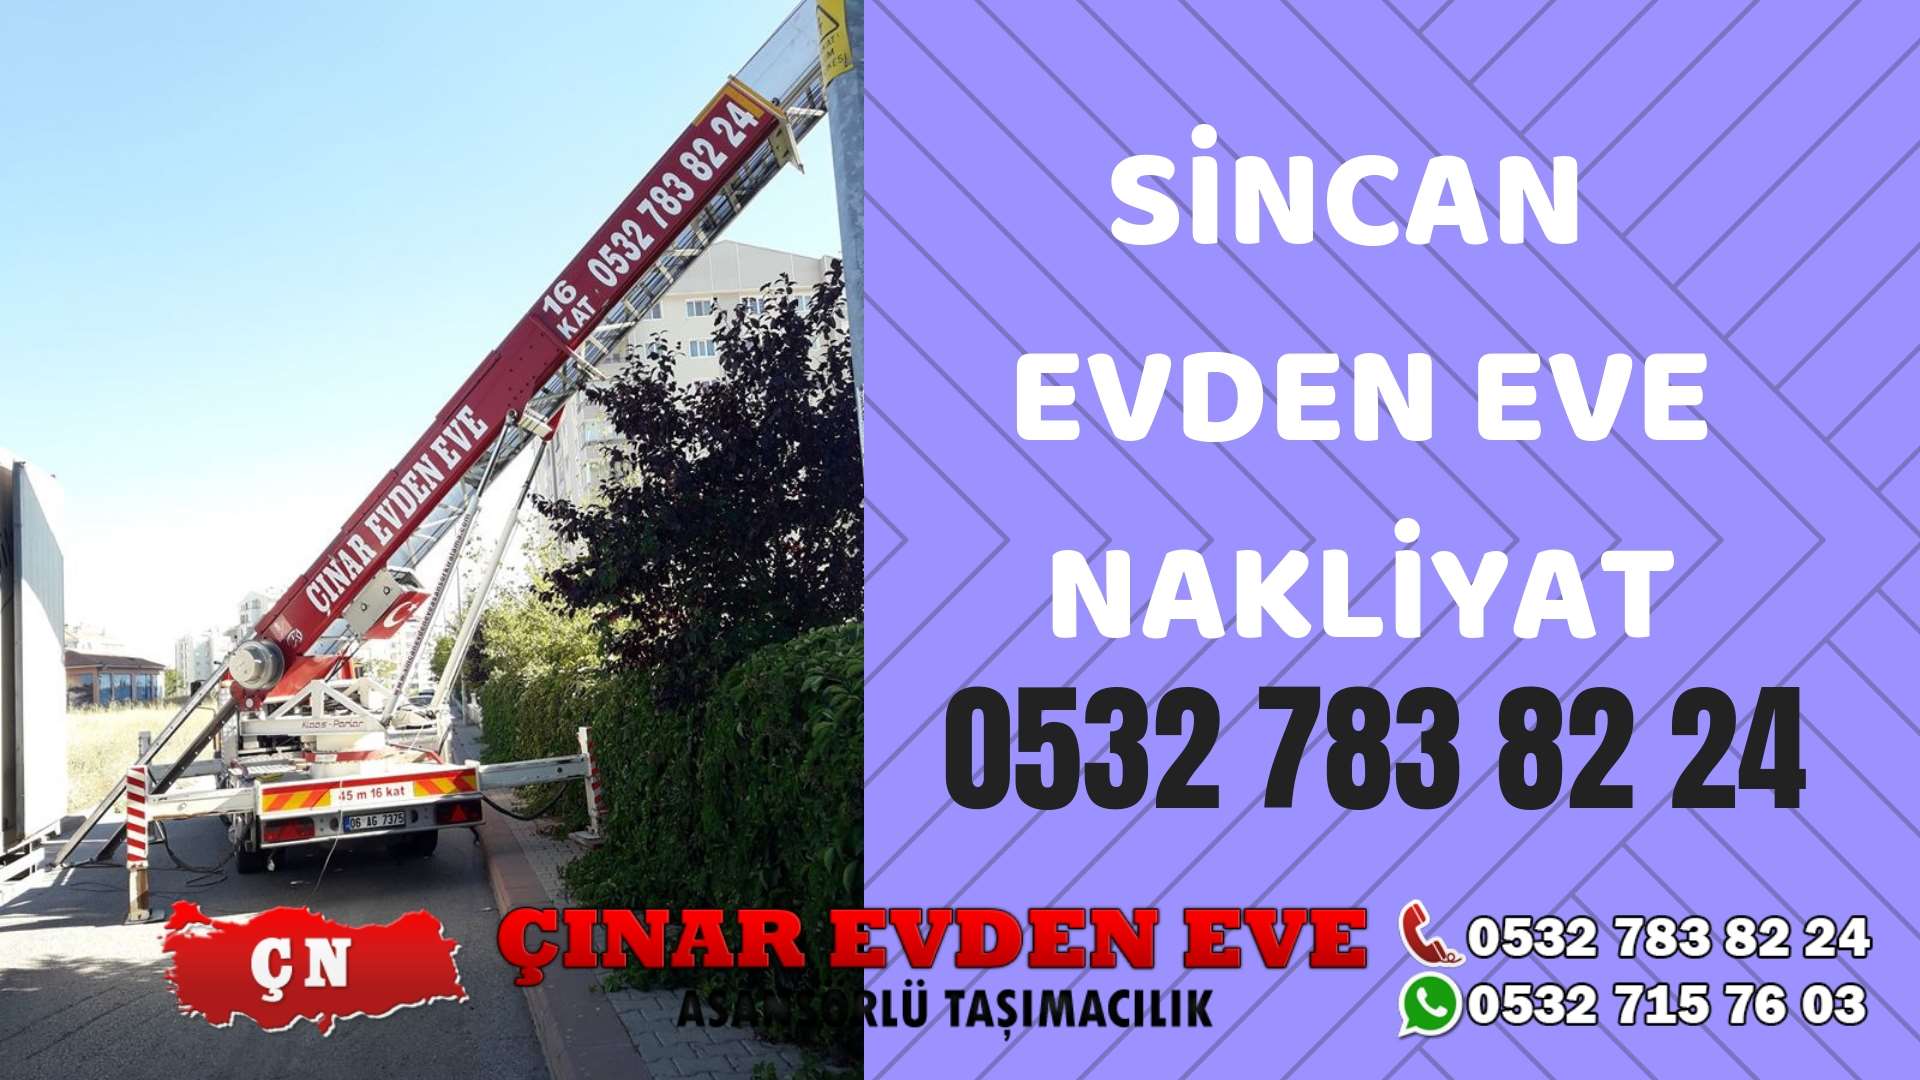 Ankara Bala Sincan evden eve asansörlü nakliyat en ucuz nakliye 0532 715 76 03